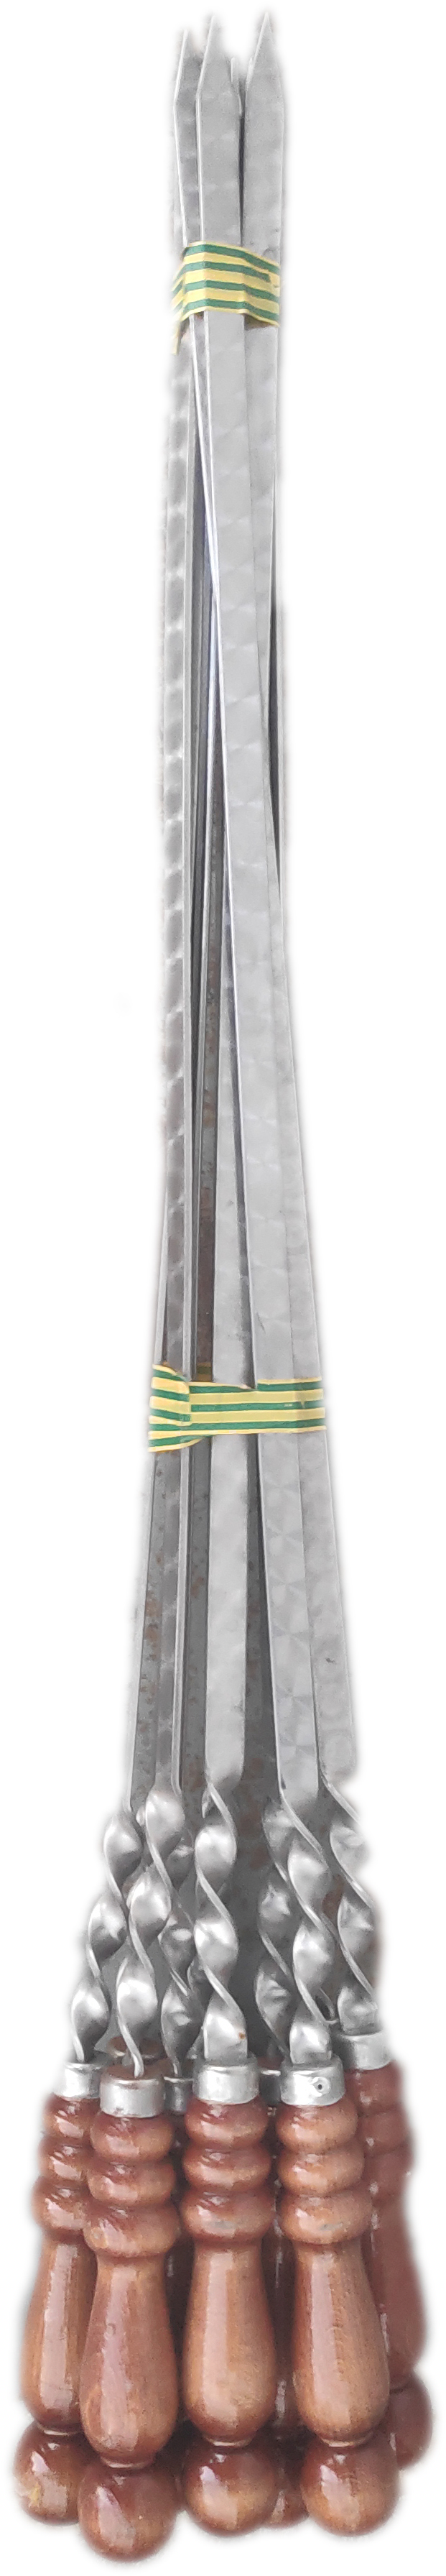 Шампур нержавейка с деревянной ручкой 40 см. (10)